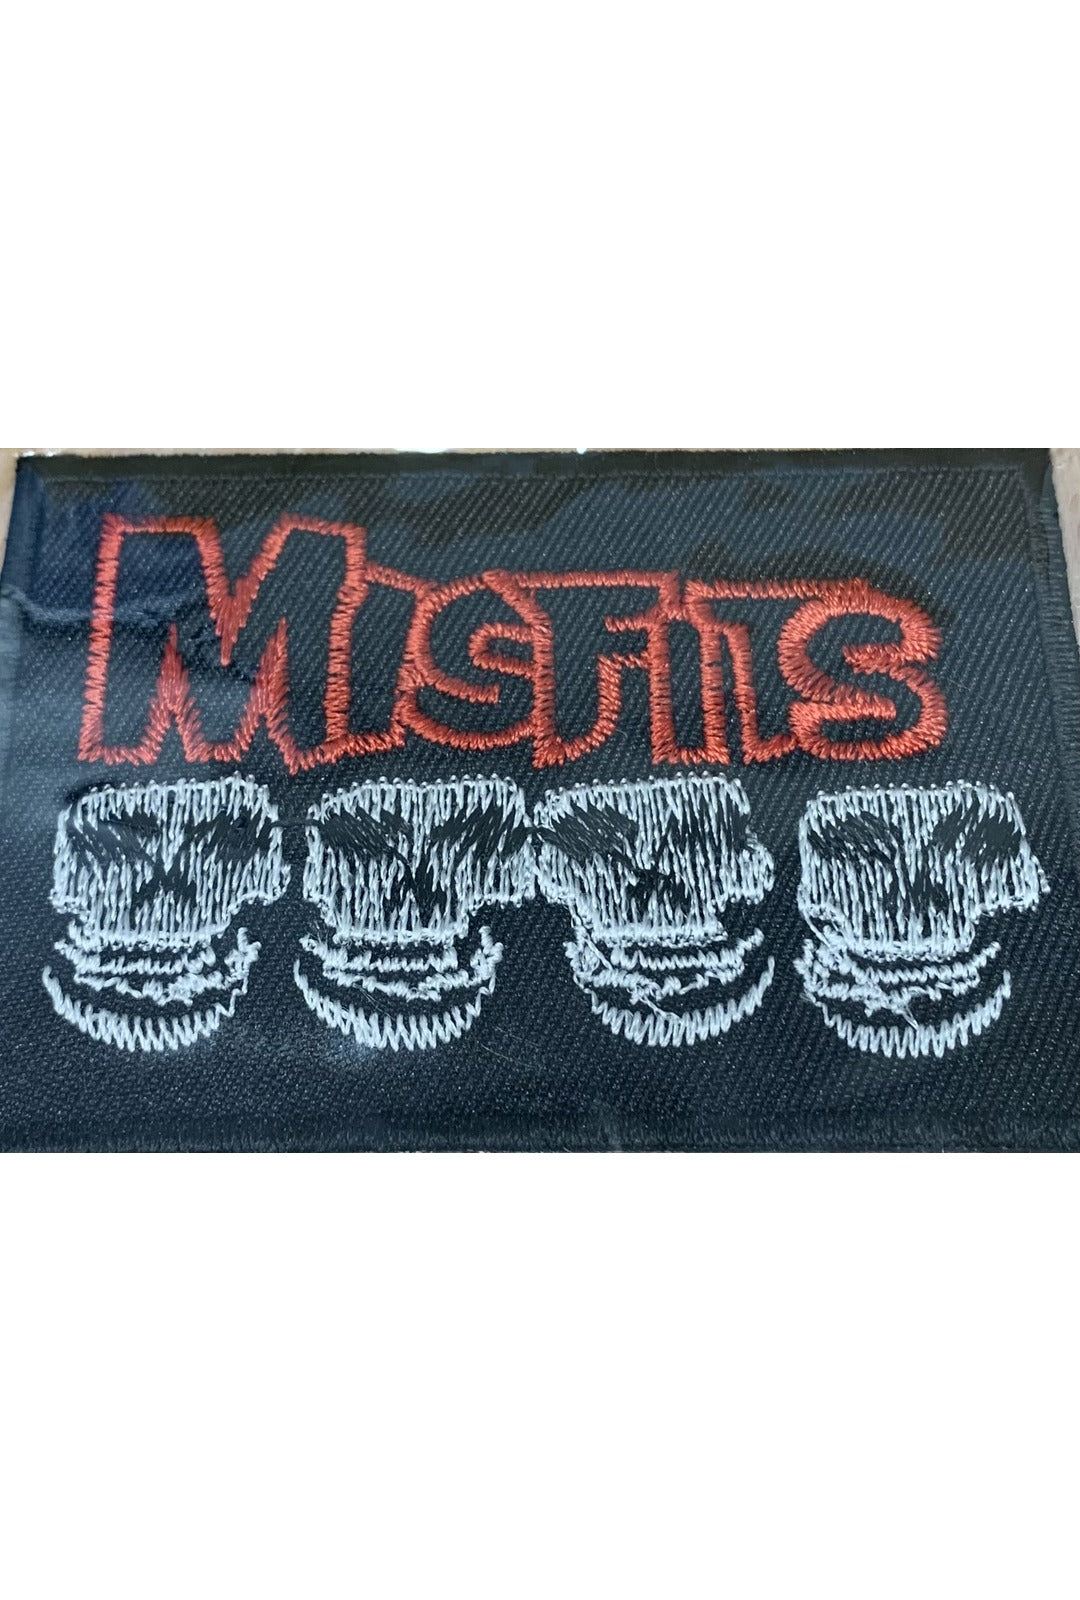 Misfits Patch